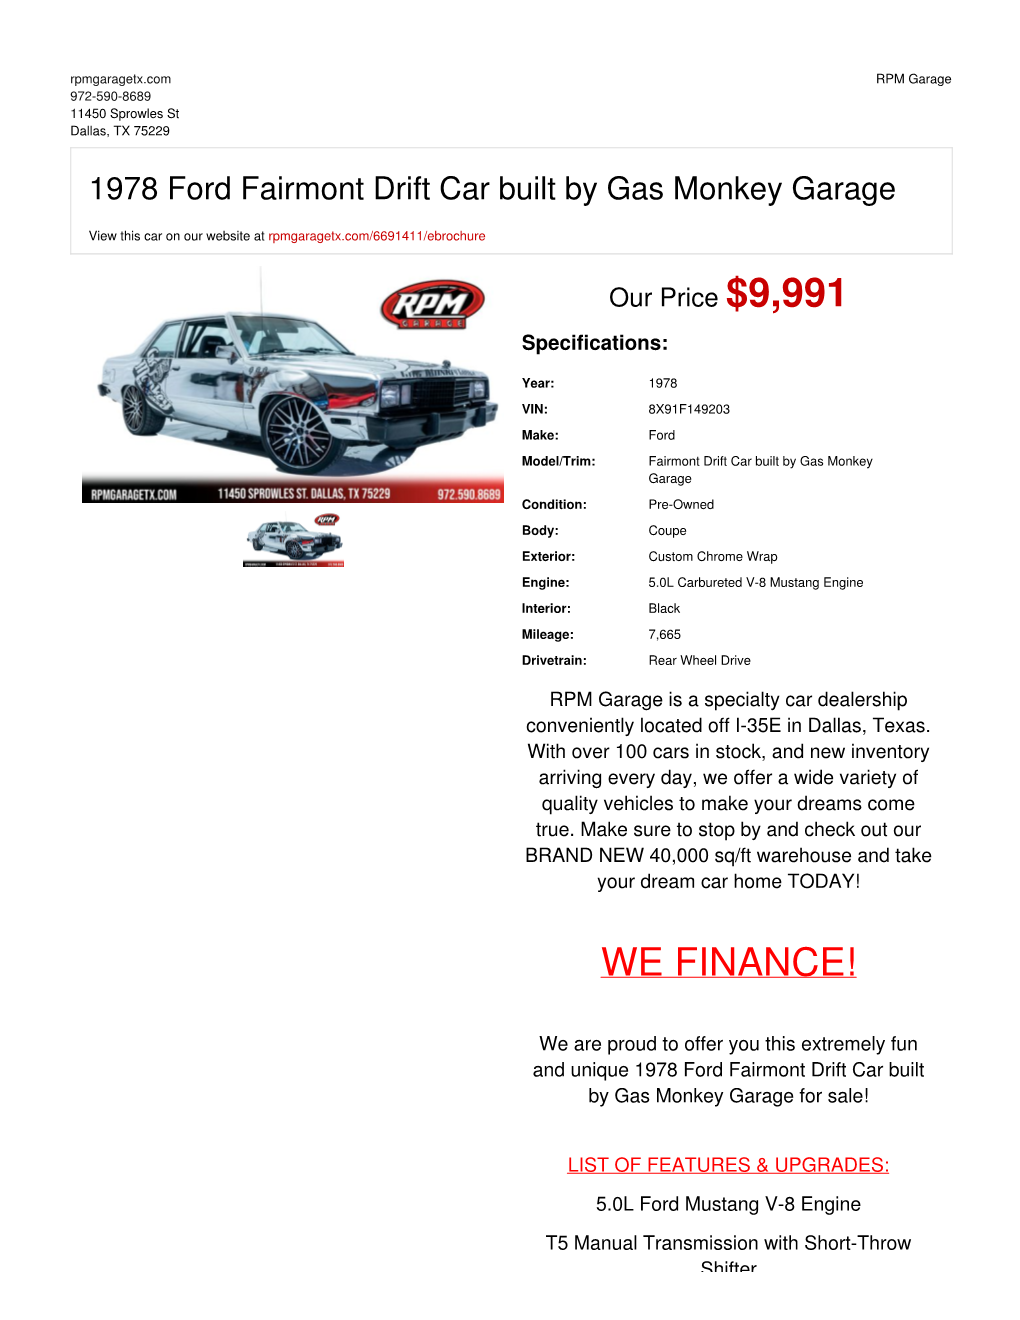 1978 Ford Fairmont Drift Car Built by Gas Monkey Garage | Dallas, TX